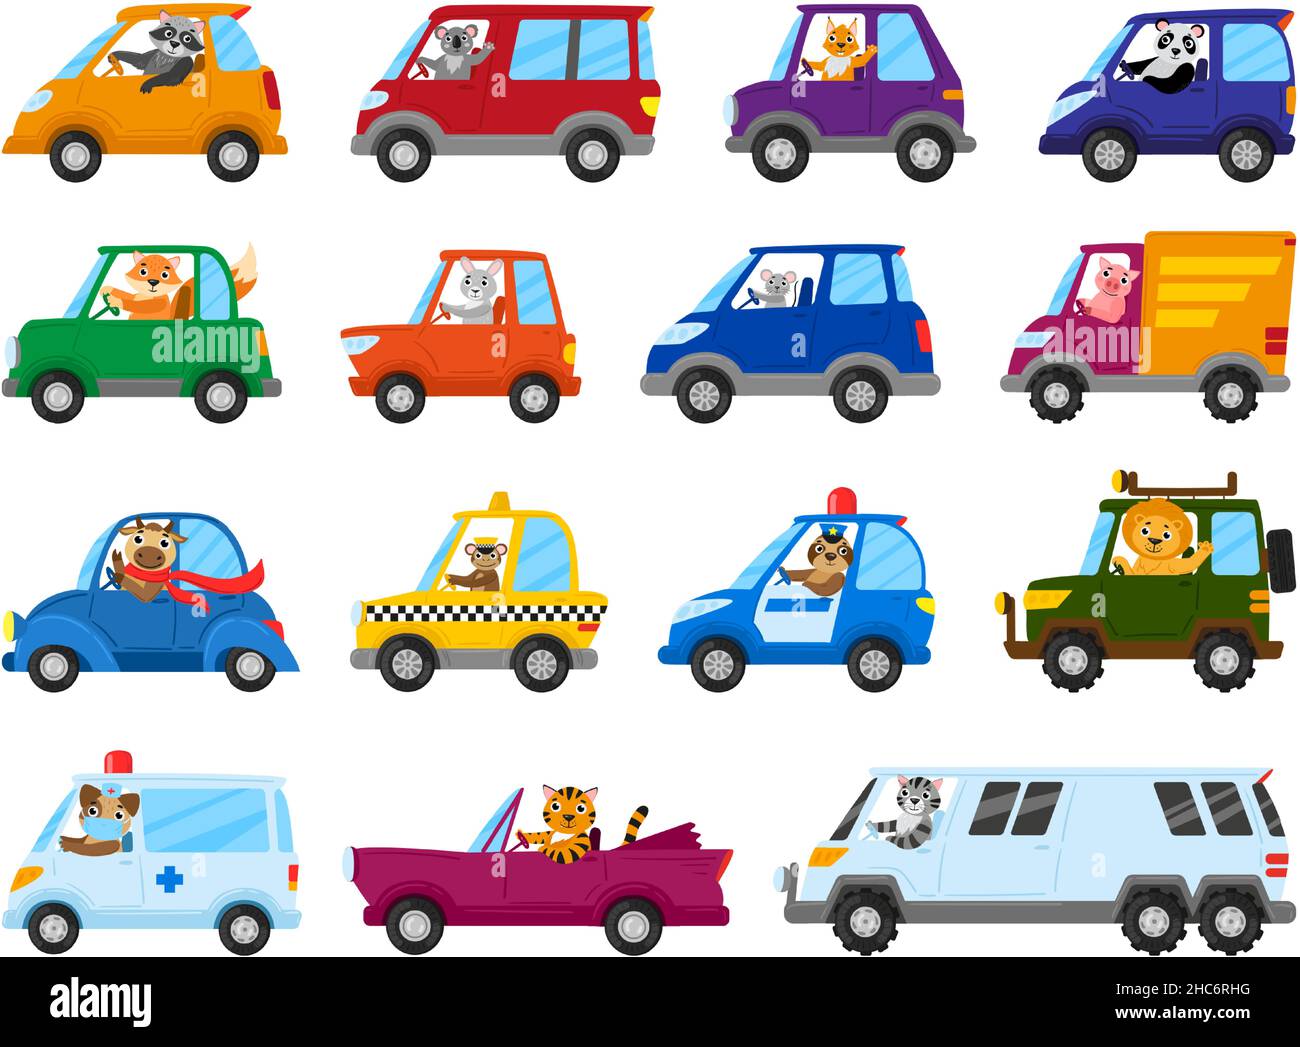 Niedliche Cartoon-Tierfahrer auf Spielzeugautos, Tier Charakter Laufwerk Spielzeug Transport. Tiere, Löwe, Maus und Waschbär fahren Spielzeug Autos Vektor Illustration Set Stock Vektor